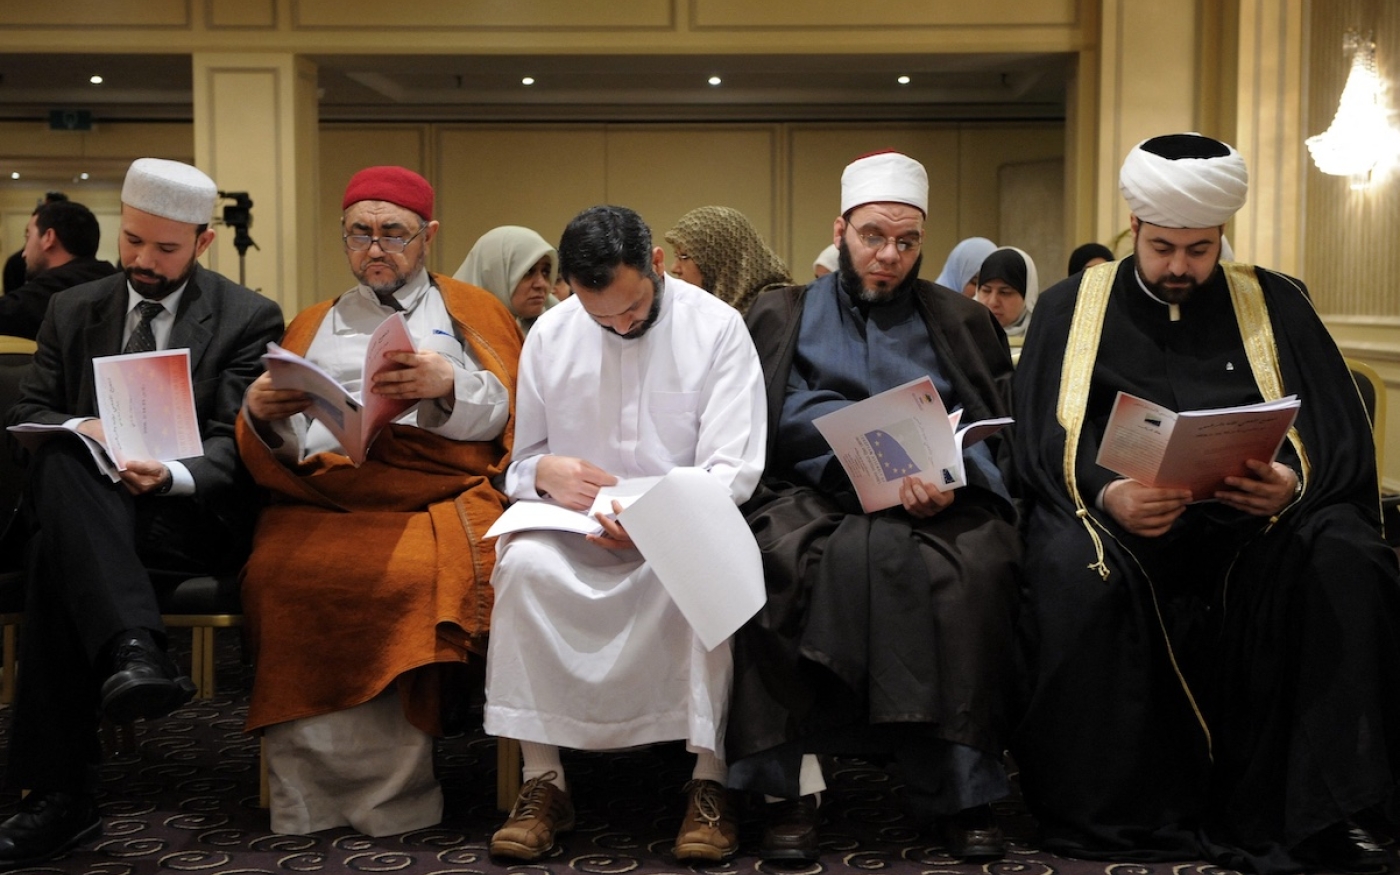 Des imams assistent au lancement de la ligue européenne des imams et aumôniers par la fédération des organisations islamiques européennes, le 23 février 2008, à Bruxelles (AFP)